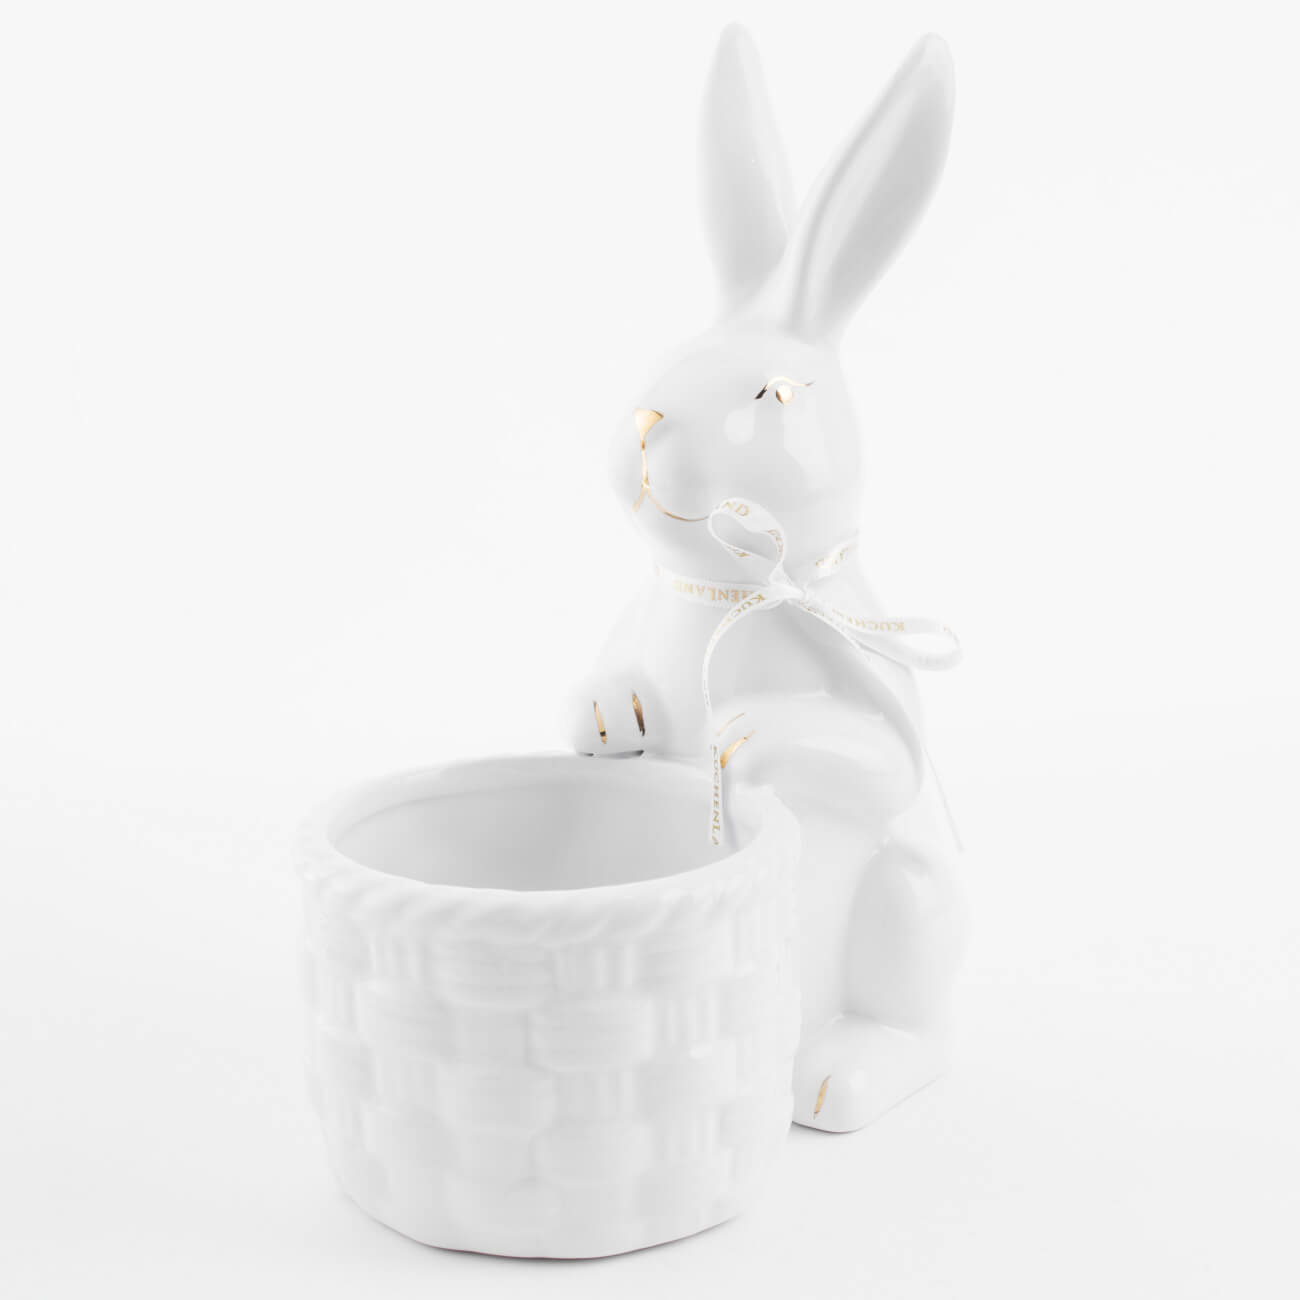 Конфетница, 18x23 см, керамика, бело-золотистая, Кролик с плетенной корзиной, Easter gold подставка для яйца 10 см керамика бело золотистая кролик со скорлупкой easter gold